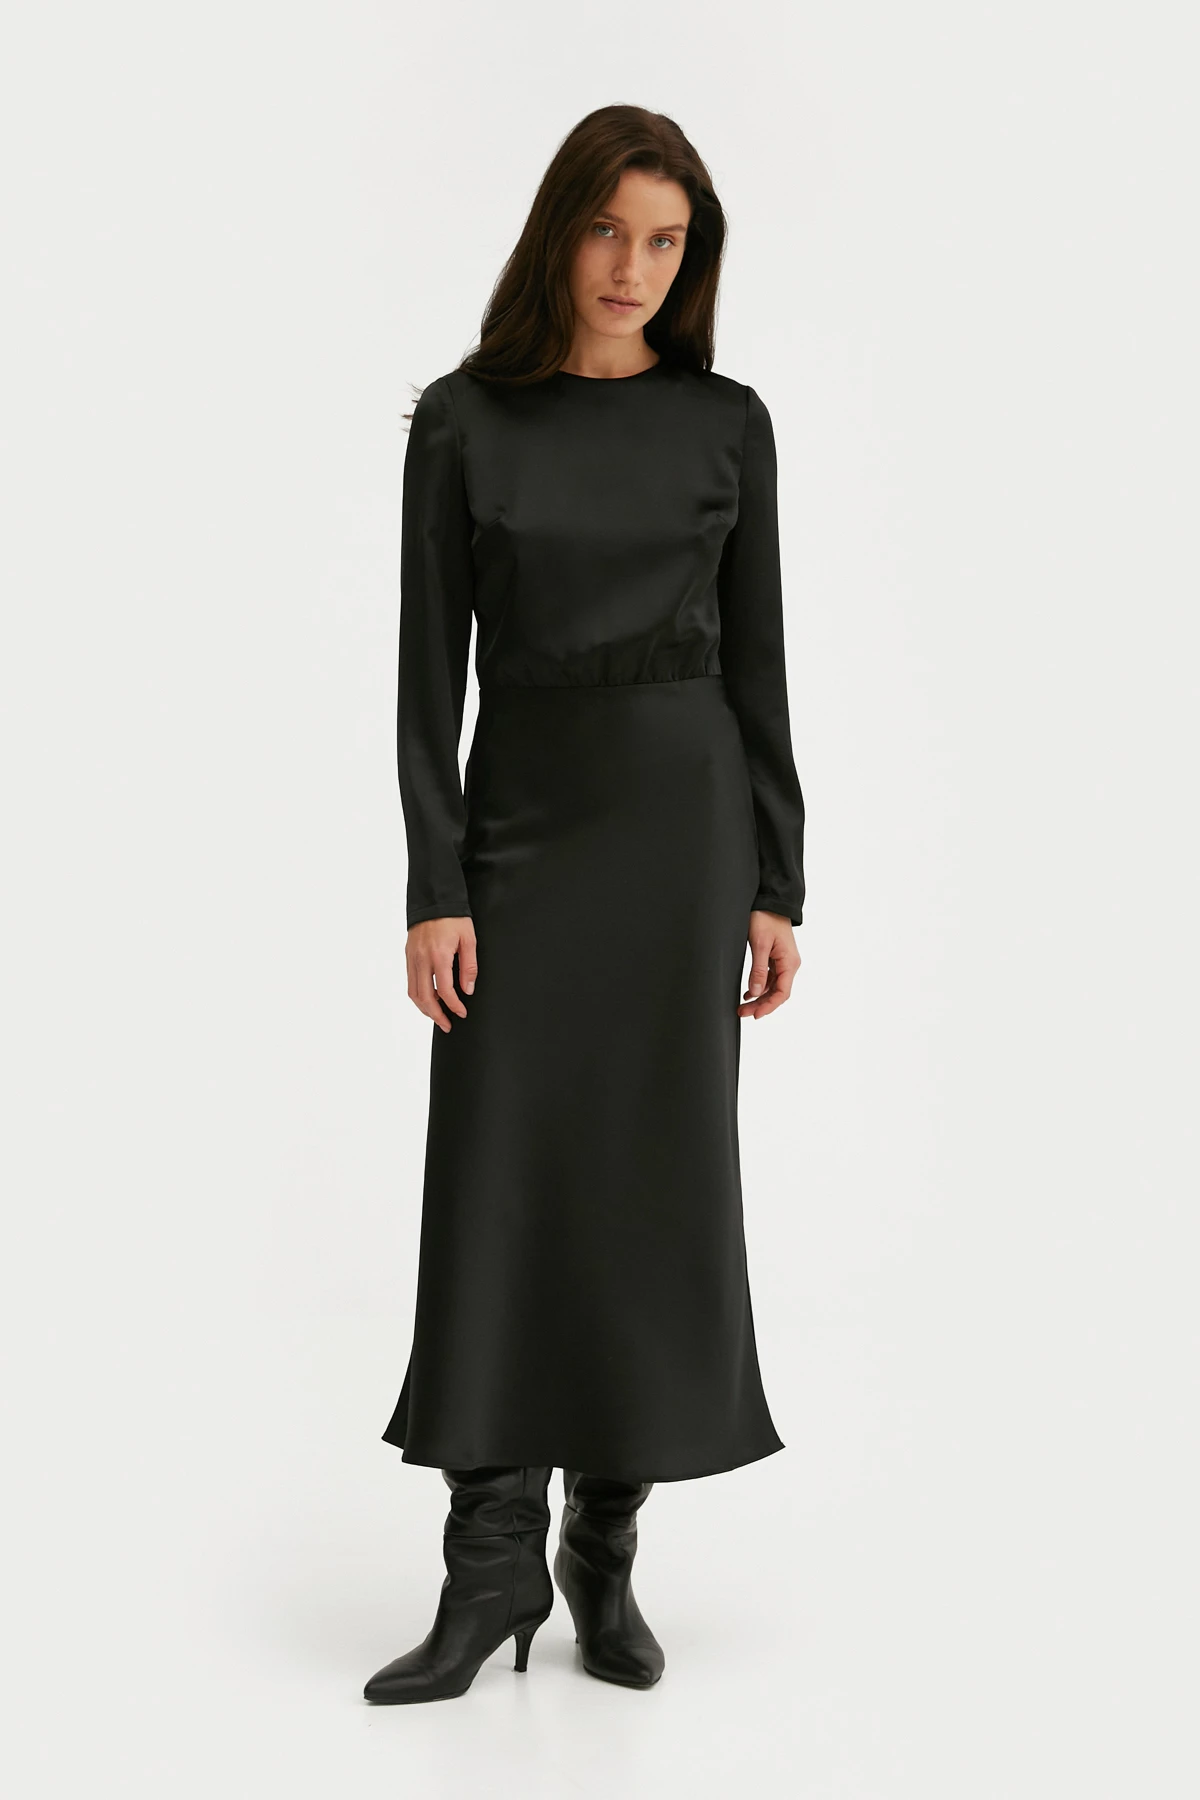 Сатинова сукня з рукавами чорного кольору, фото 1